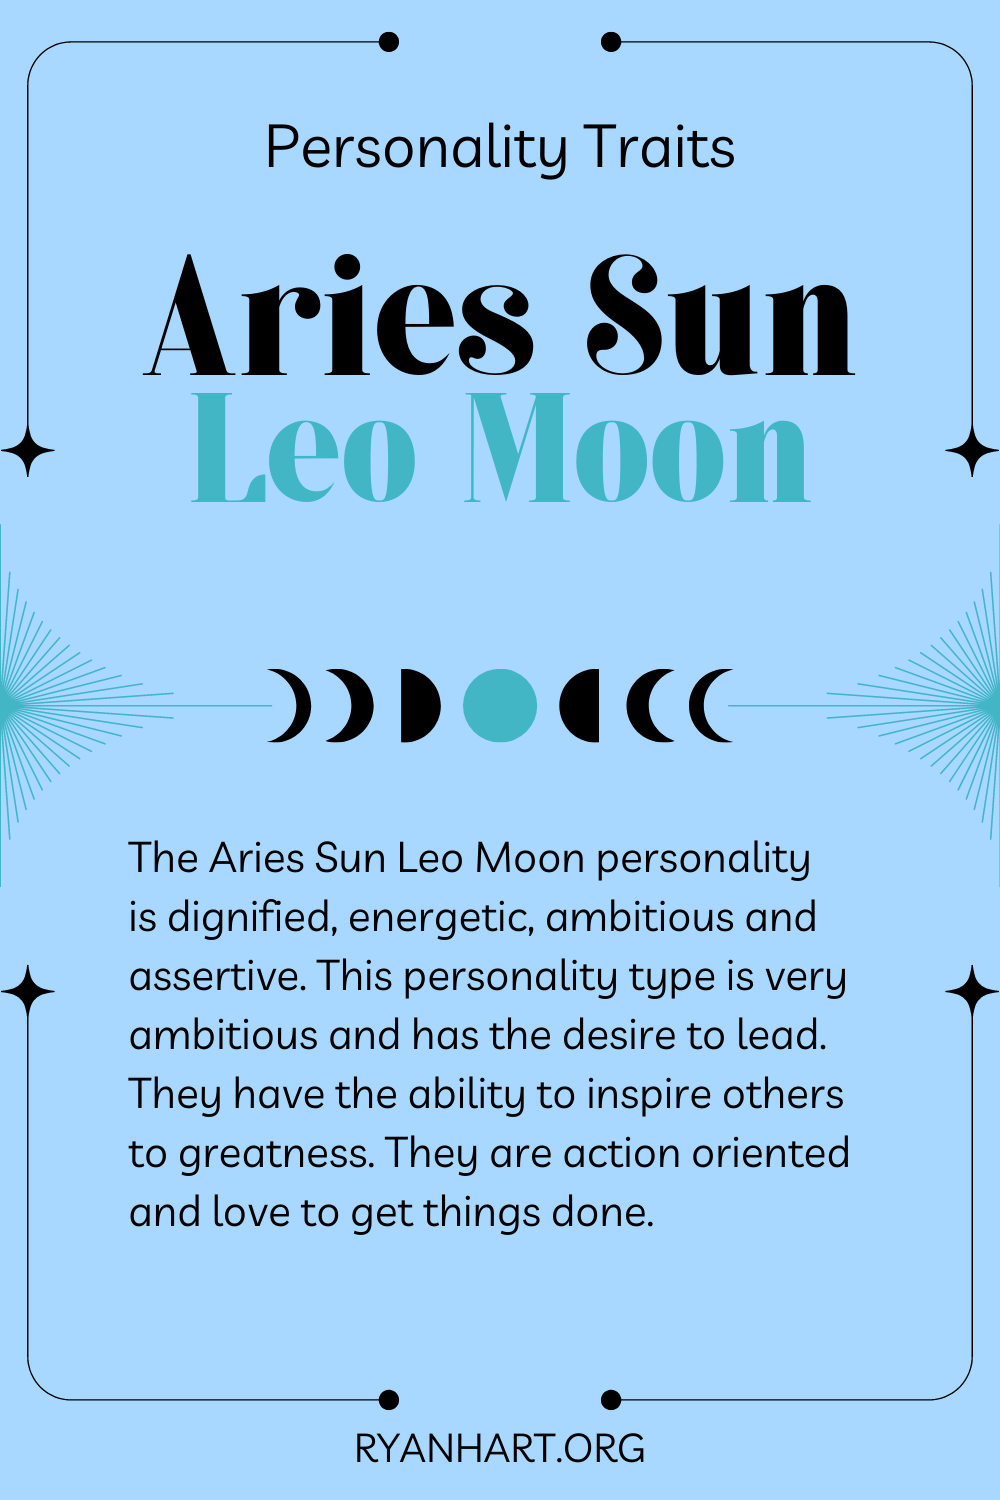  Aries Sun Leo Moon စရိုက်လက္ခဏာများ